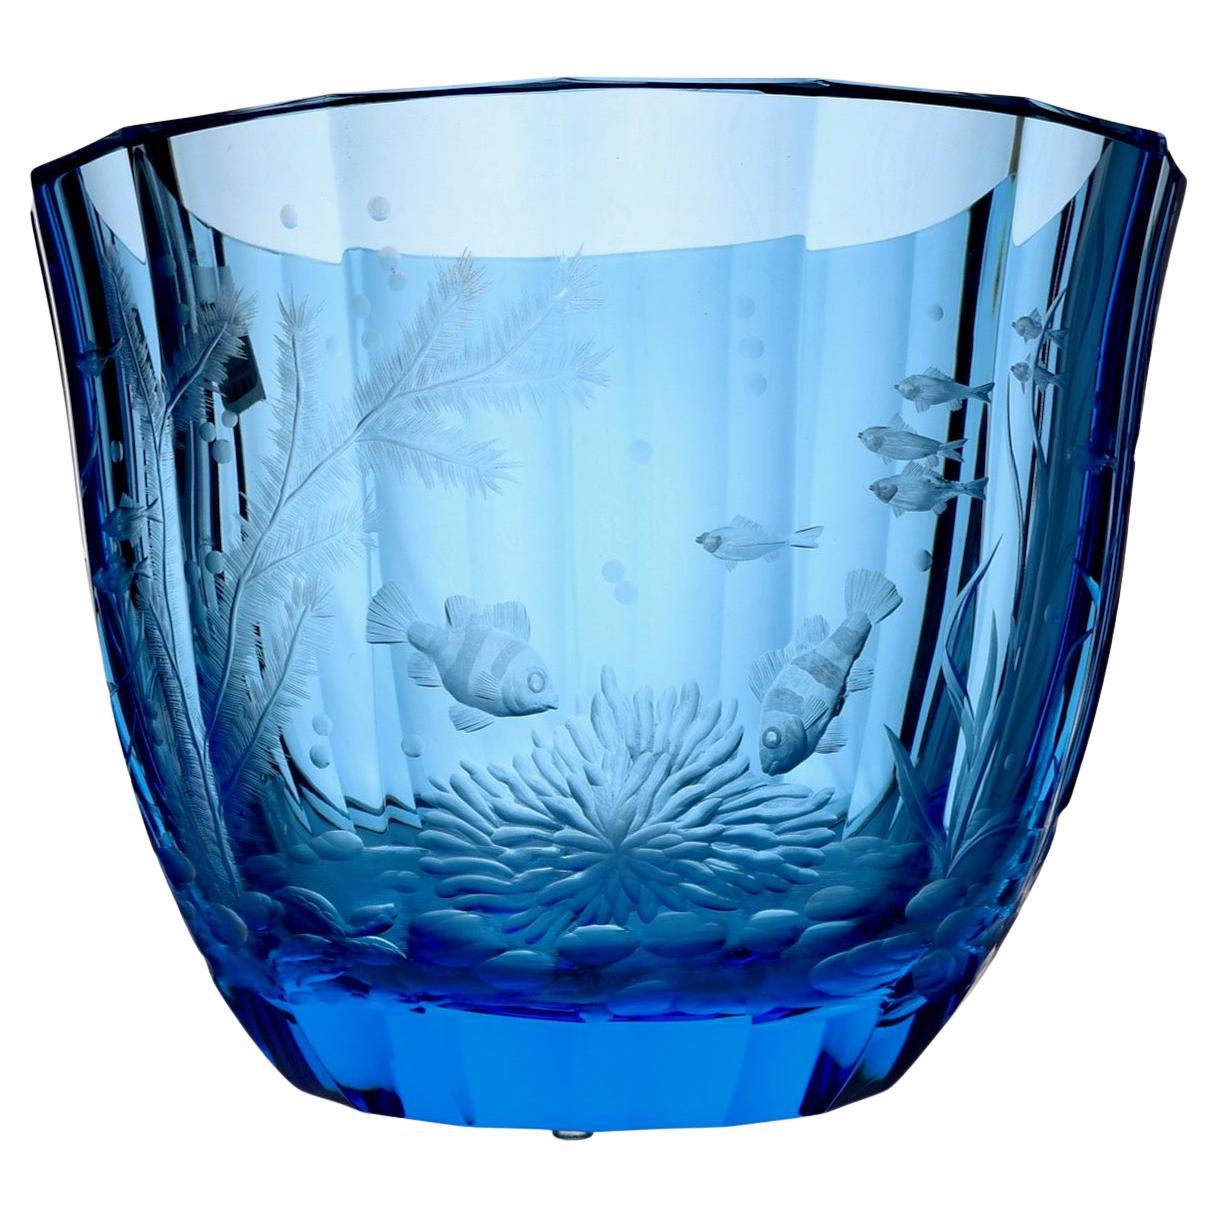 Moser Alexandra Ocean Life Vase For Sale